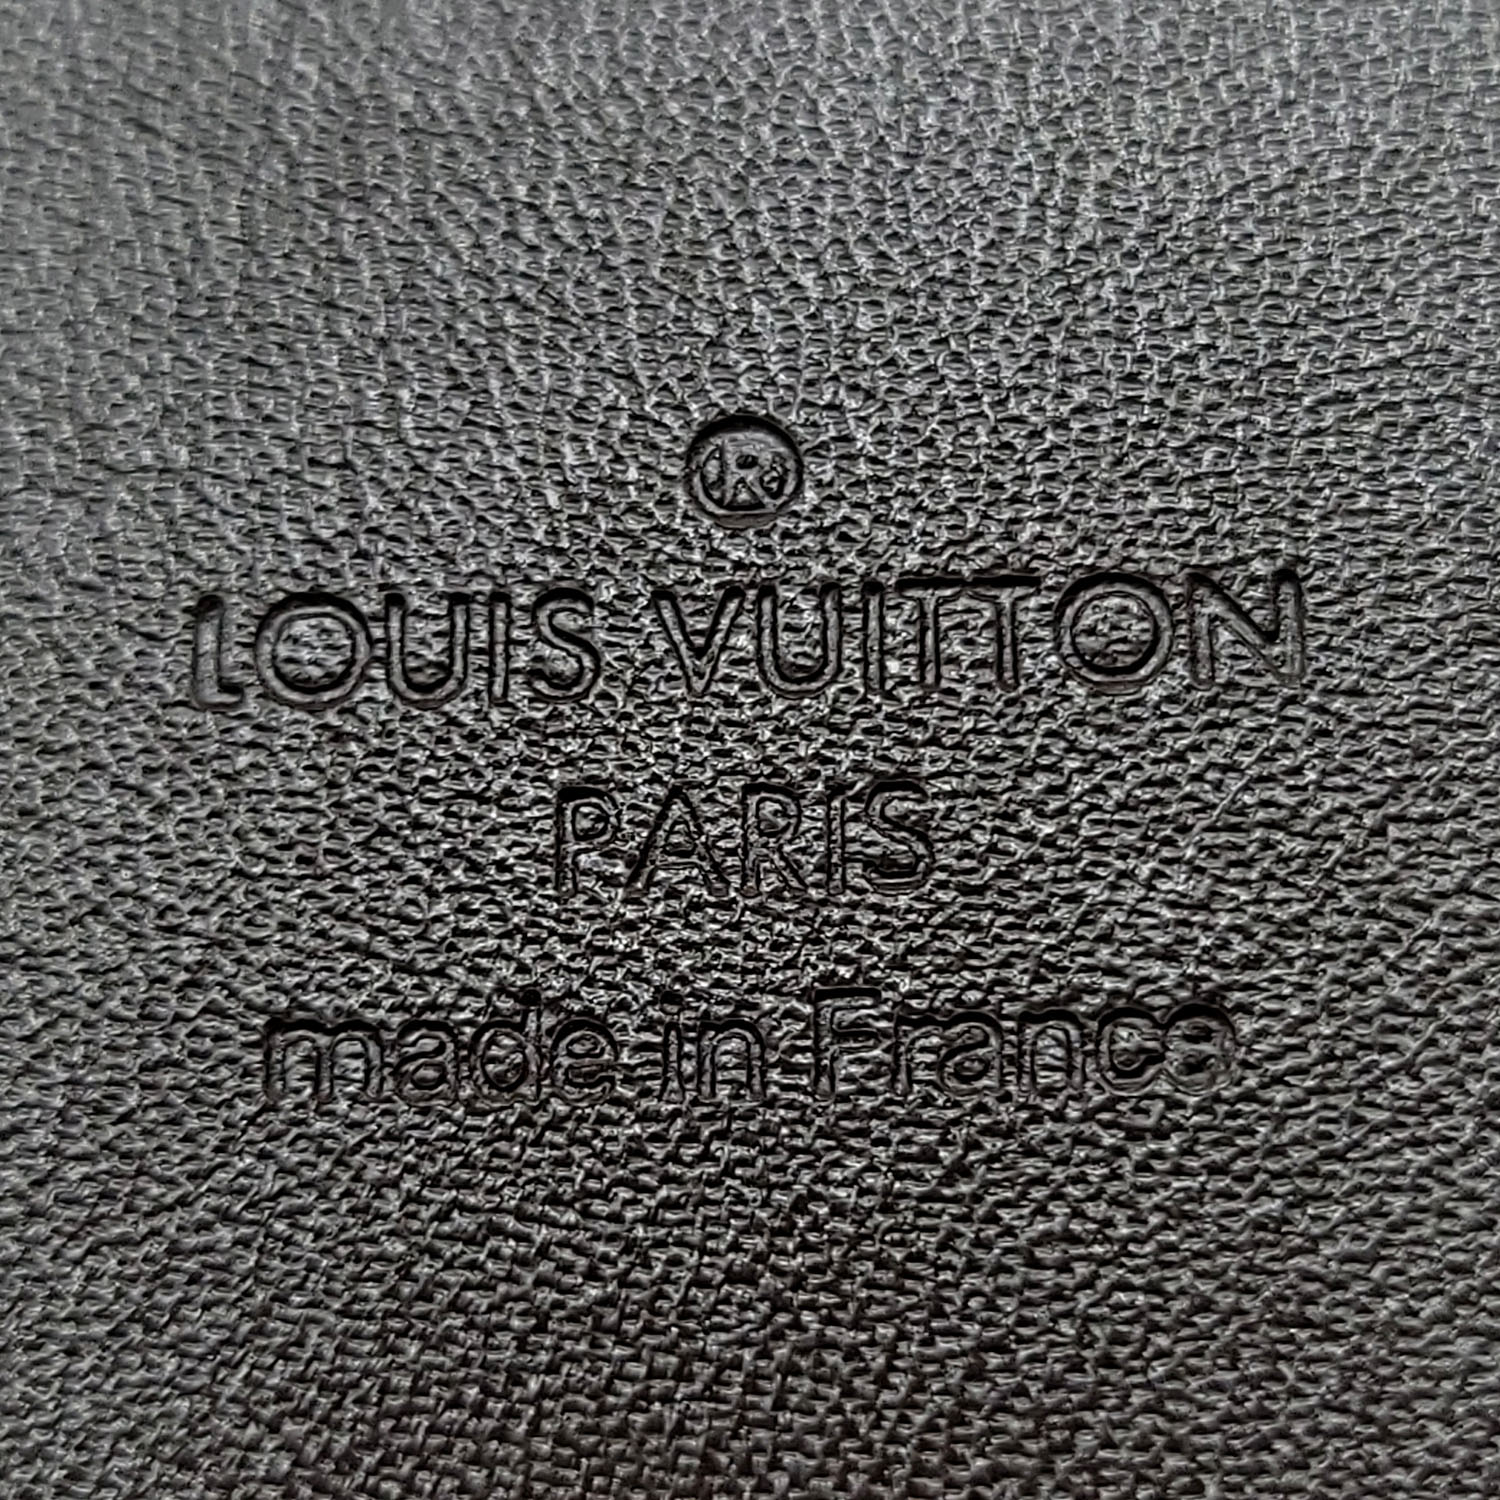 NIB Authentic Louis Vuitton downtown belt Damier Print 40mm 90CM/36 M0374U